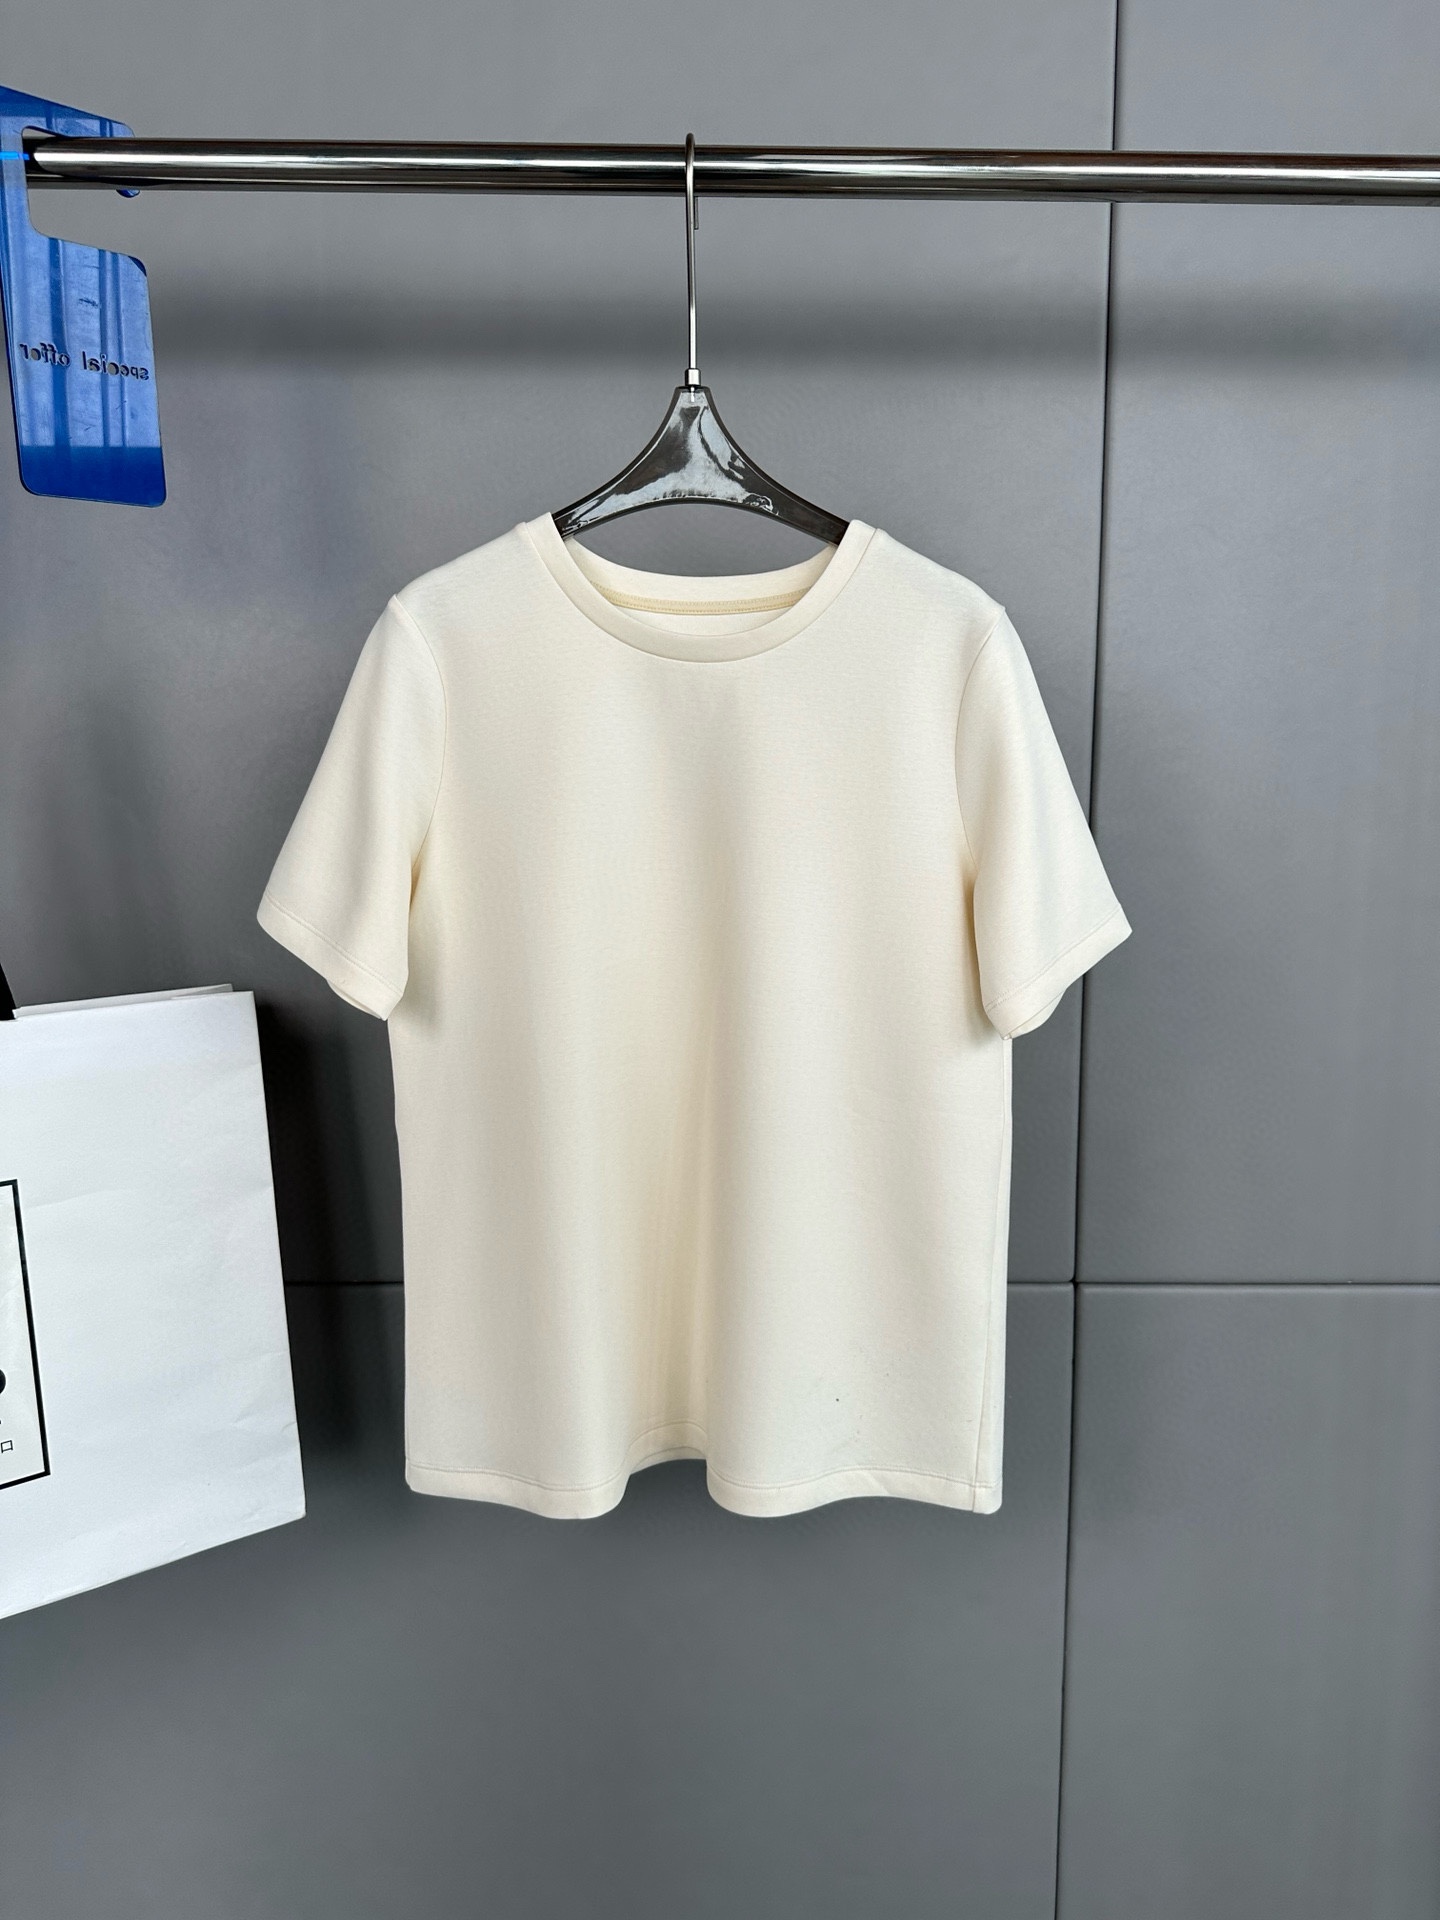 Max Mara 新款 净色圆领短袖T恤、后背刺绣M字母、定制面料超级有质感、上身也非常舒服码数S  M  L  XL